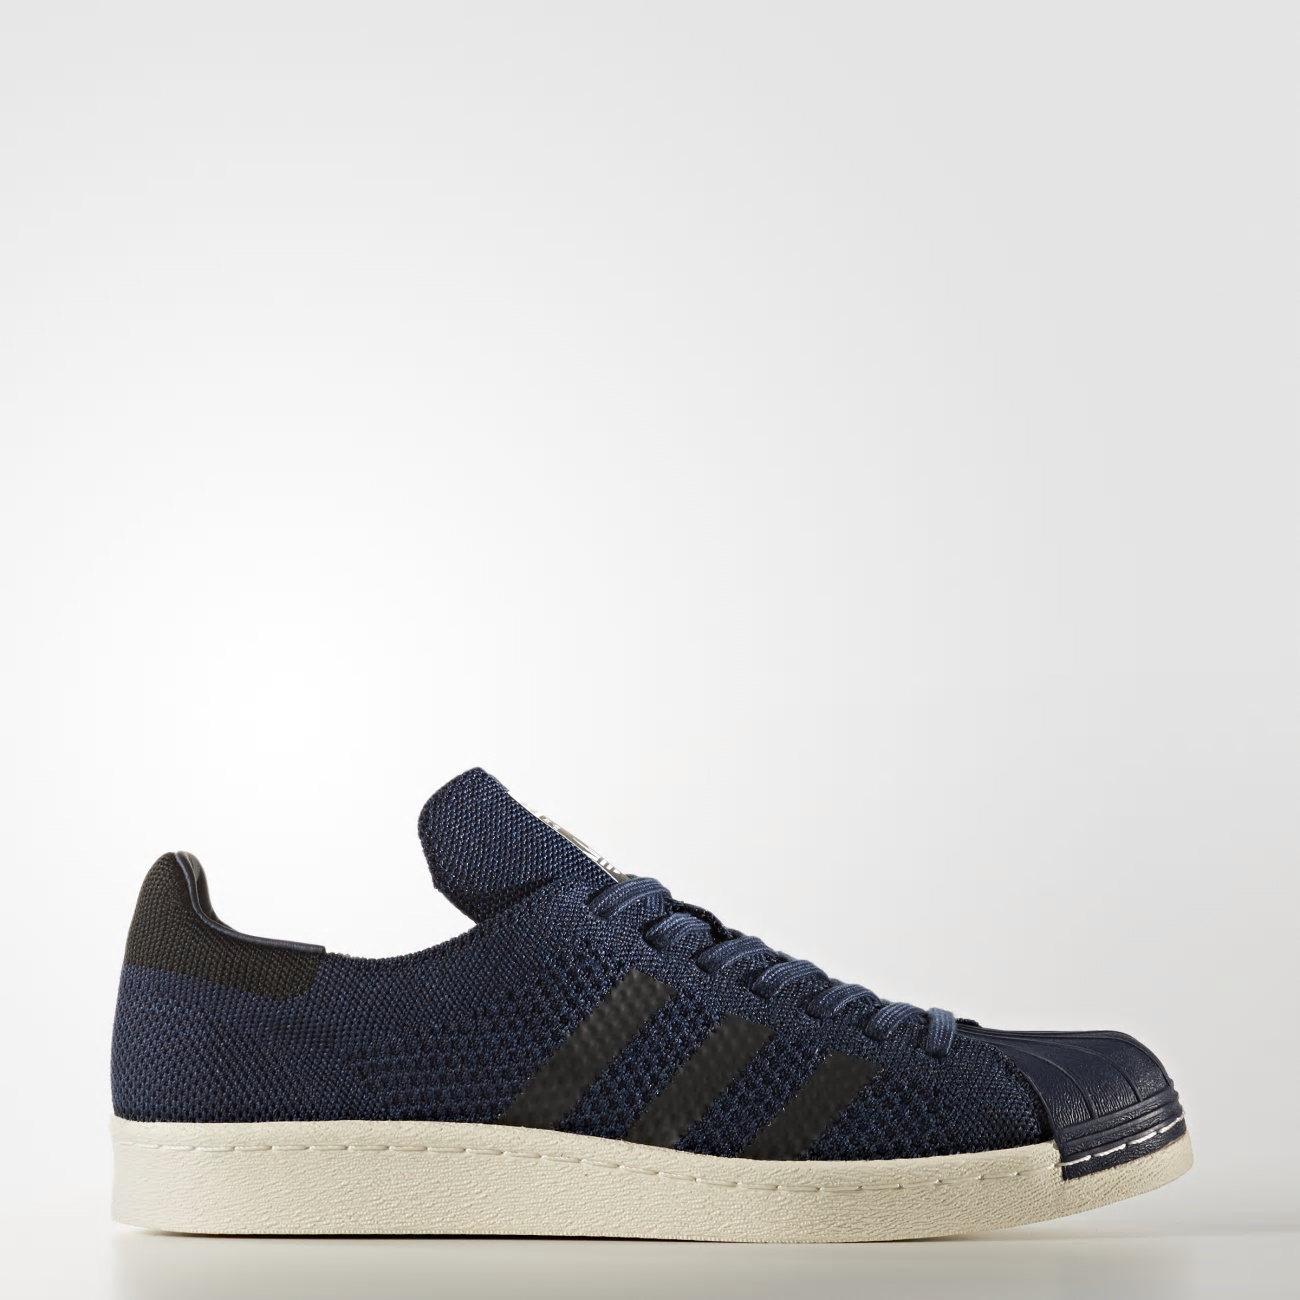 Adidas Superstar 80s Primeknit Női Originals Cipő - Kék [D21576]